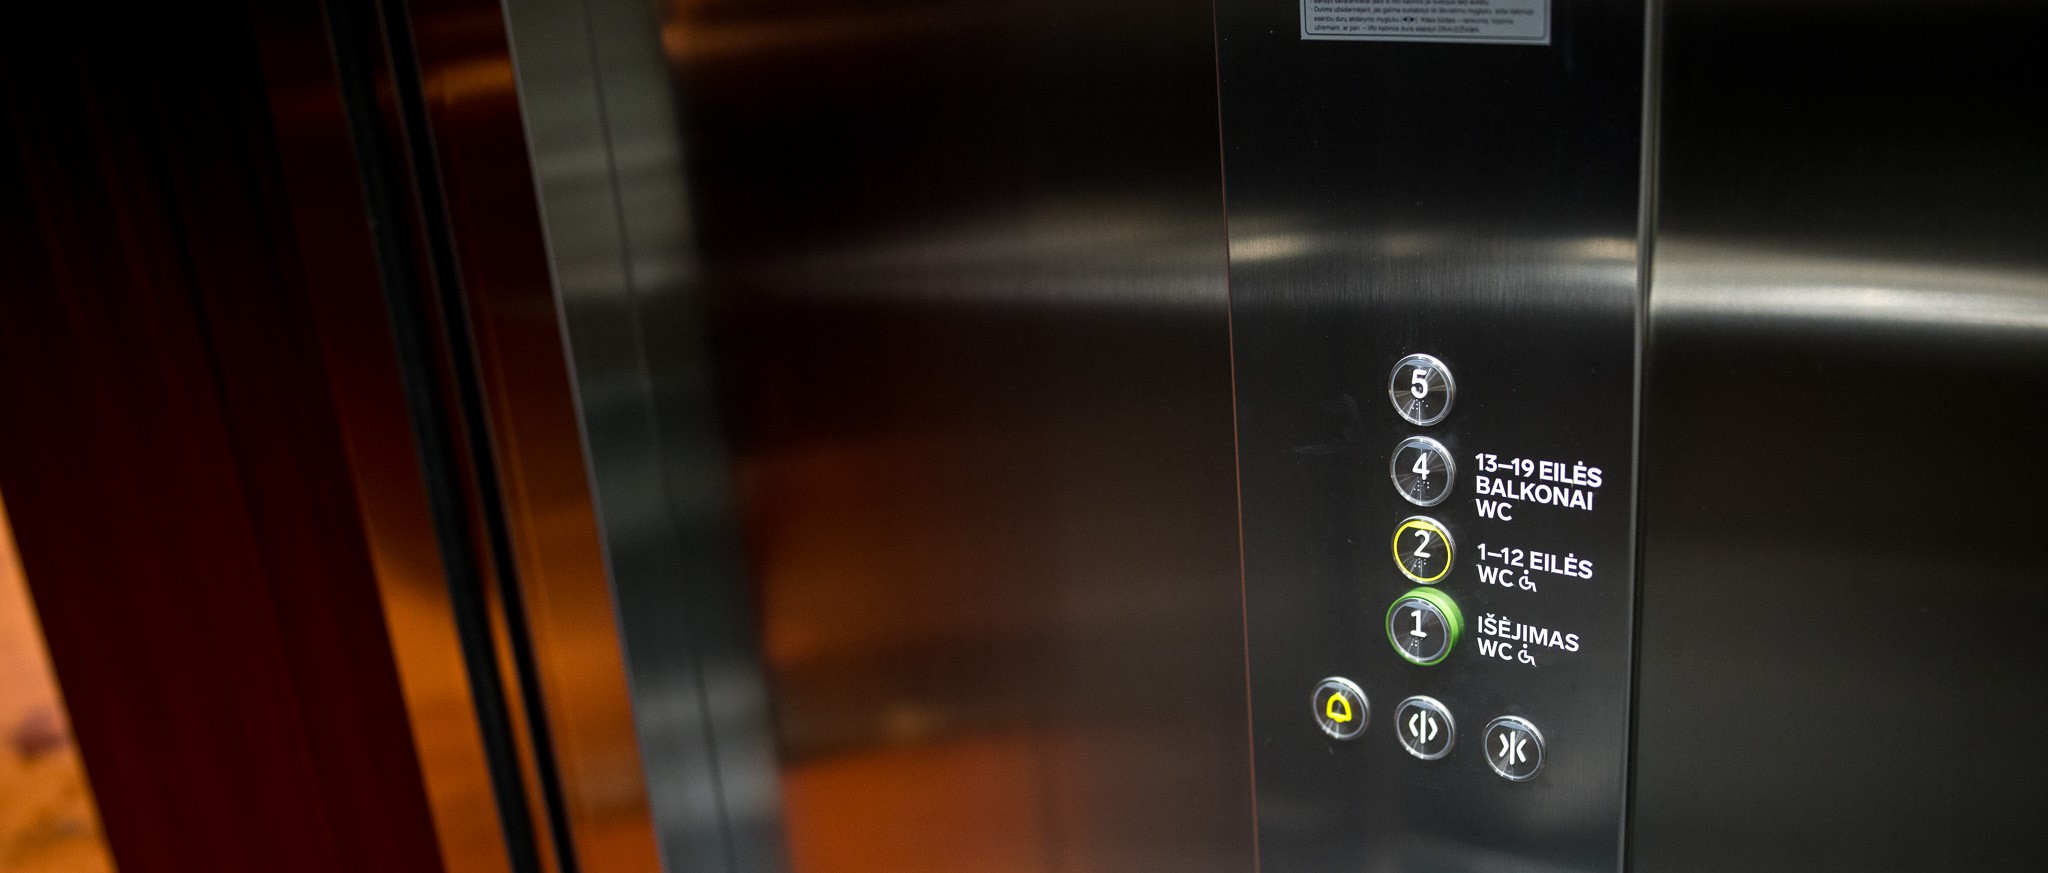 apie mus skiltyje - orona liftas iš Operos namų Vilniuje